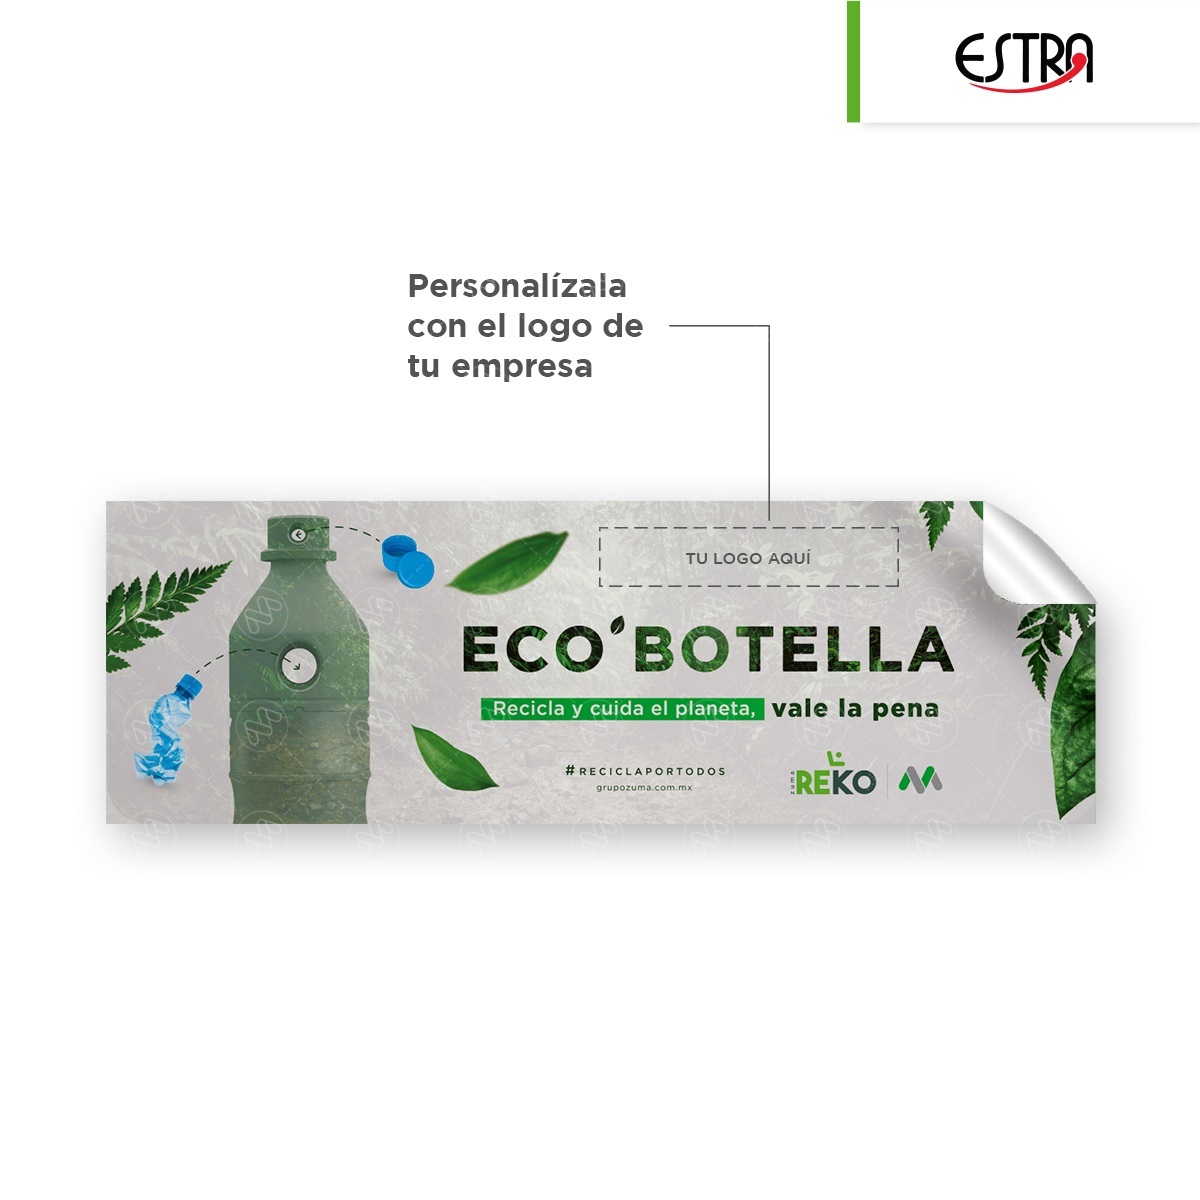 bote-para-reciclaje-para-botellas-de-plastico-estra-eco-botella-vista-003.jpg